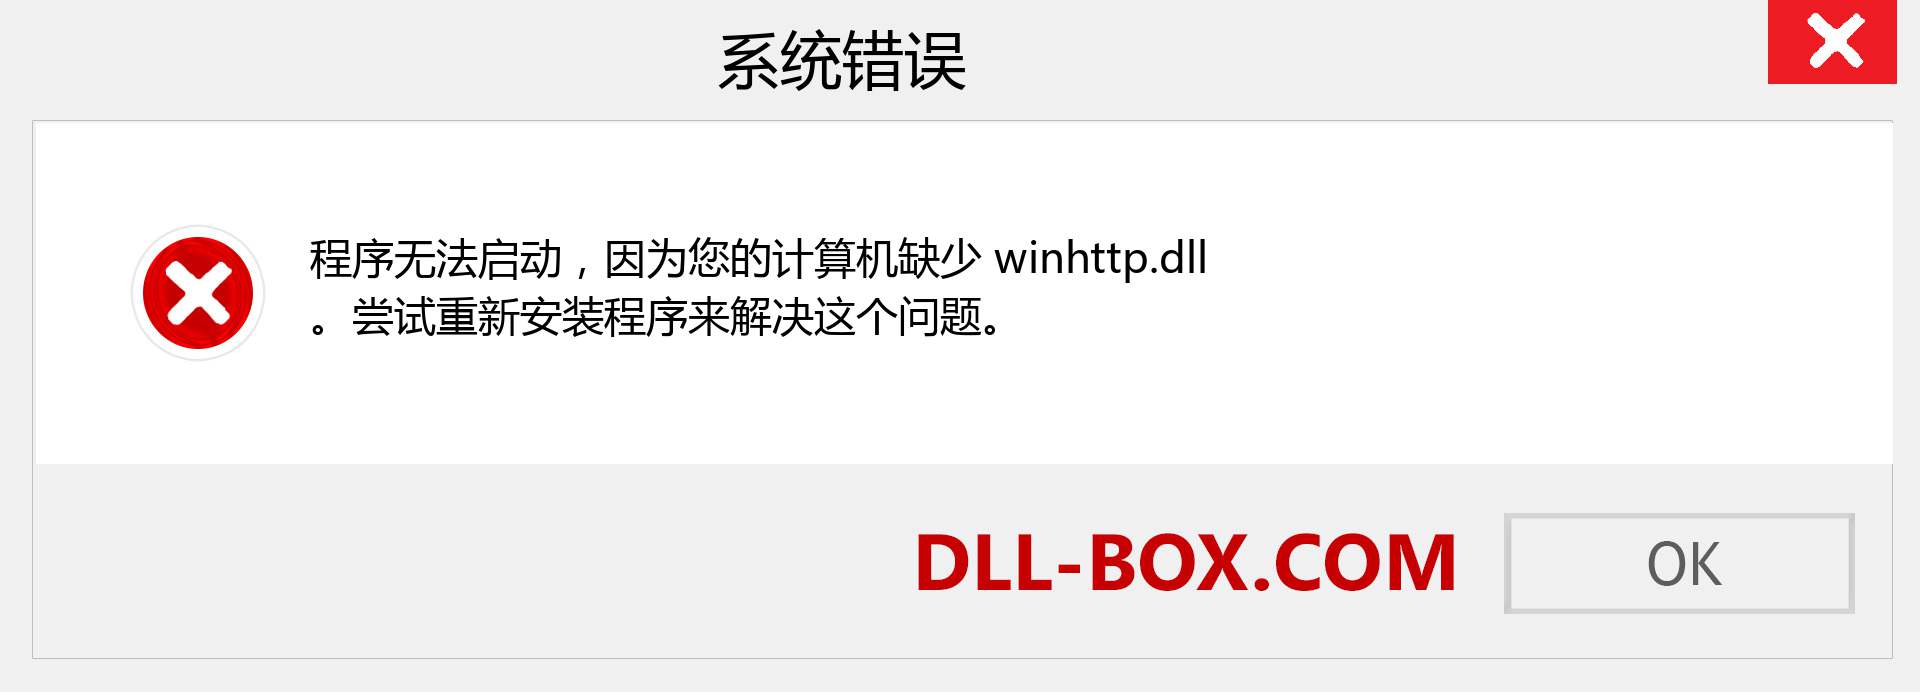 winhttp.dll 文件丢失？。 适用于 Windows 7、8、10 的下载 - 修复 Windows、照片、图像上的 winhttp dll 丢失错误